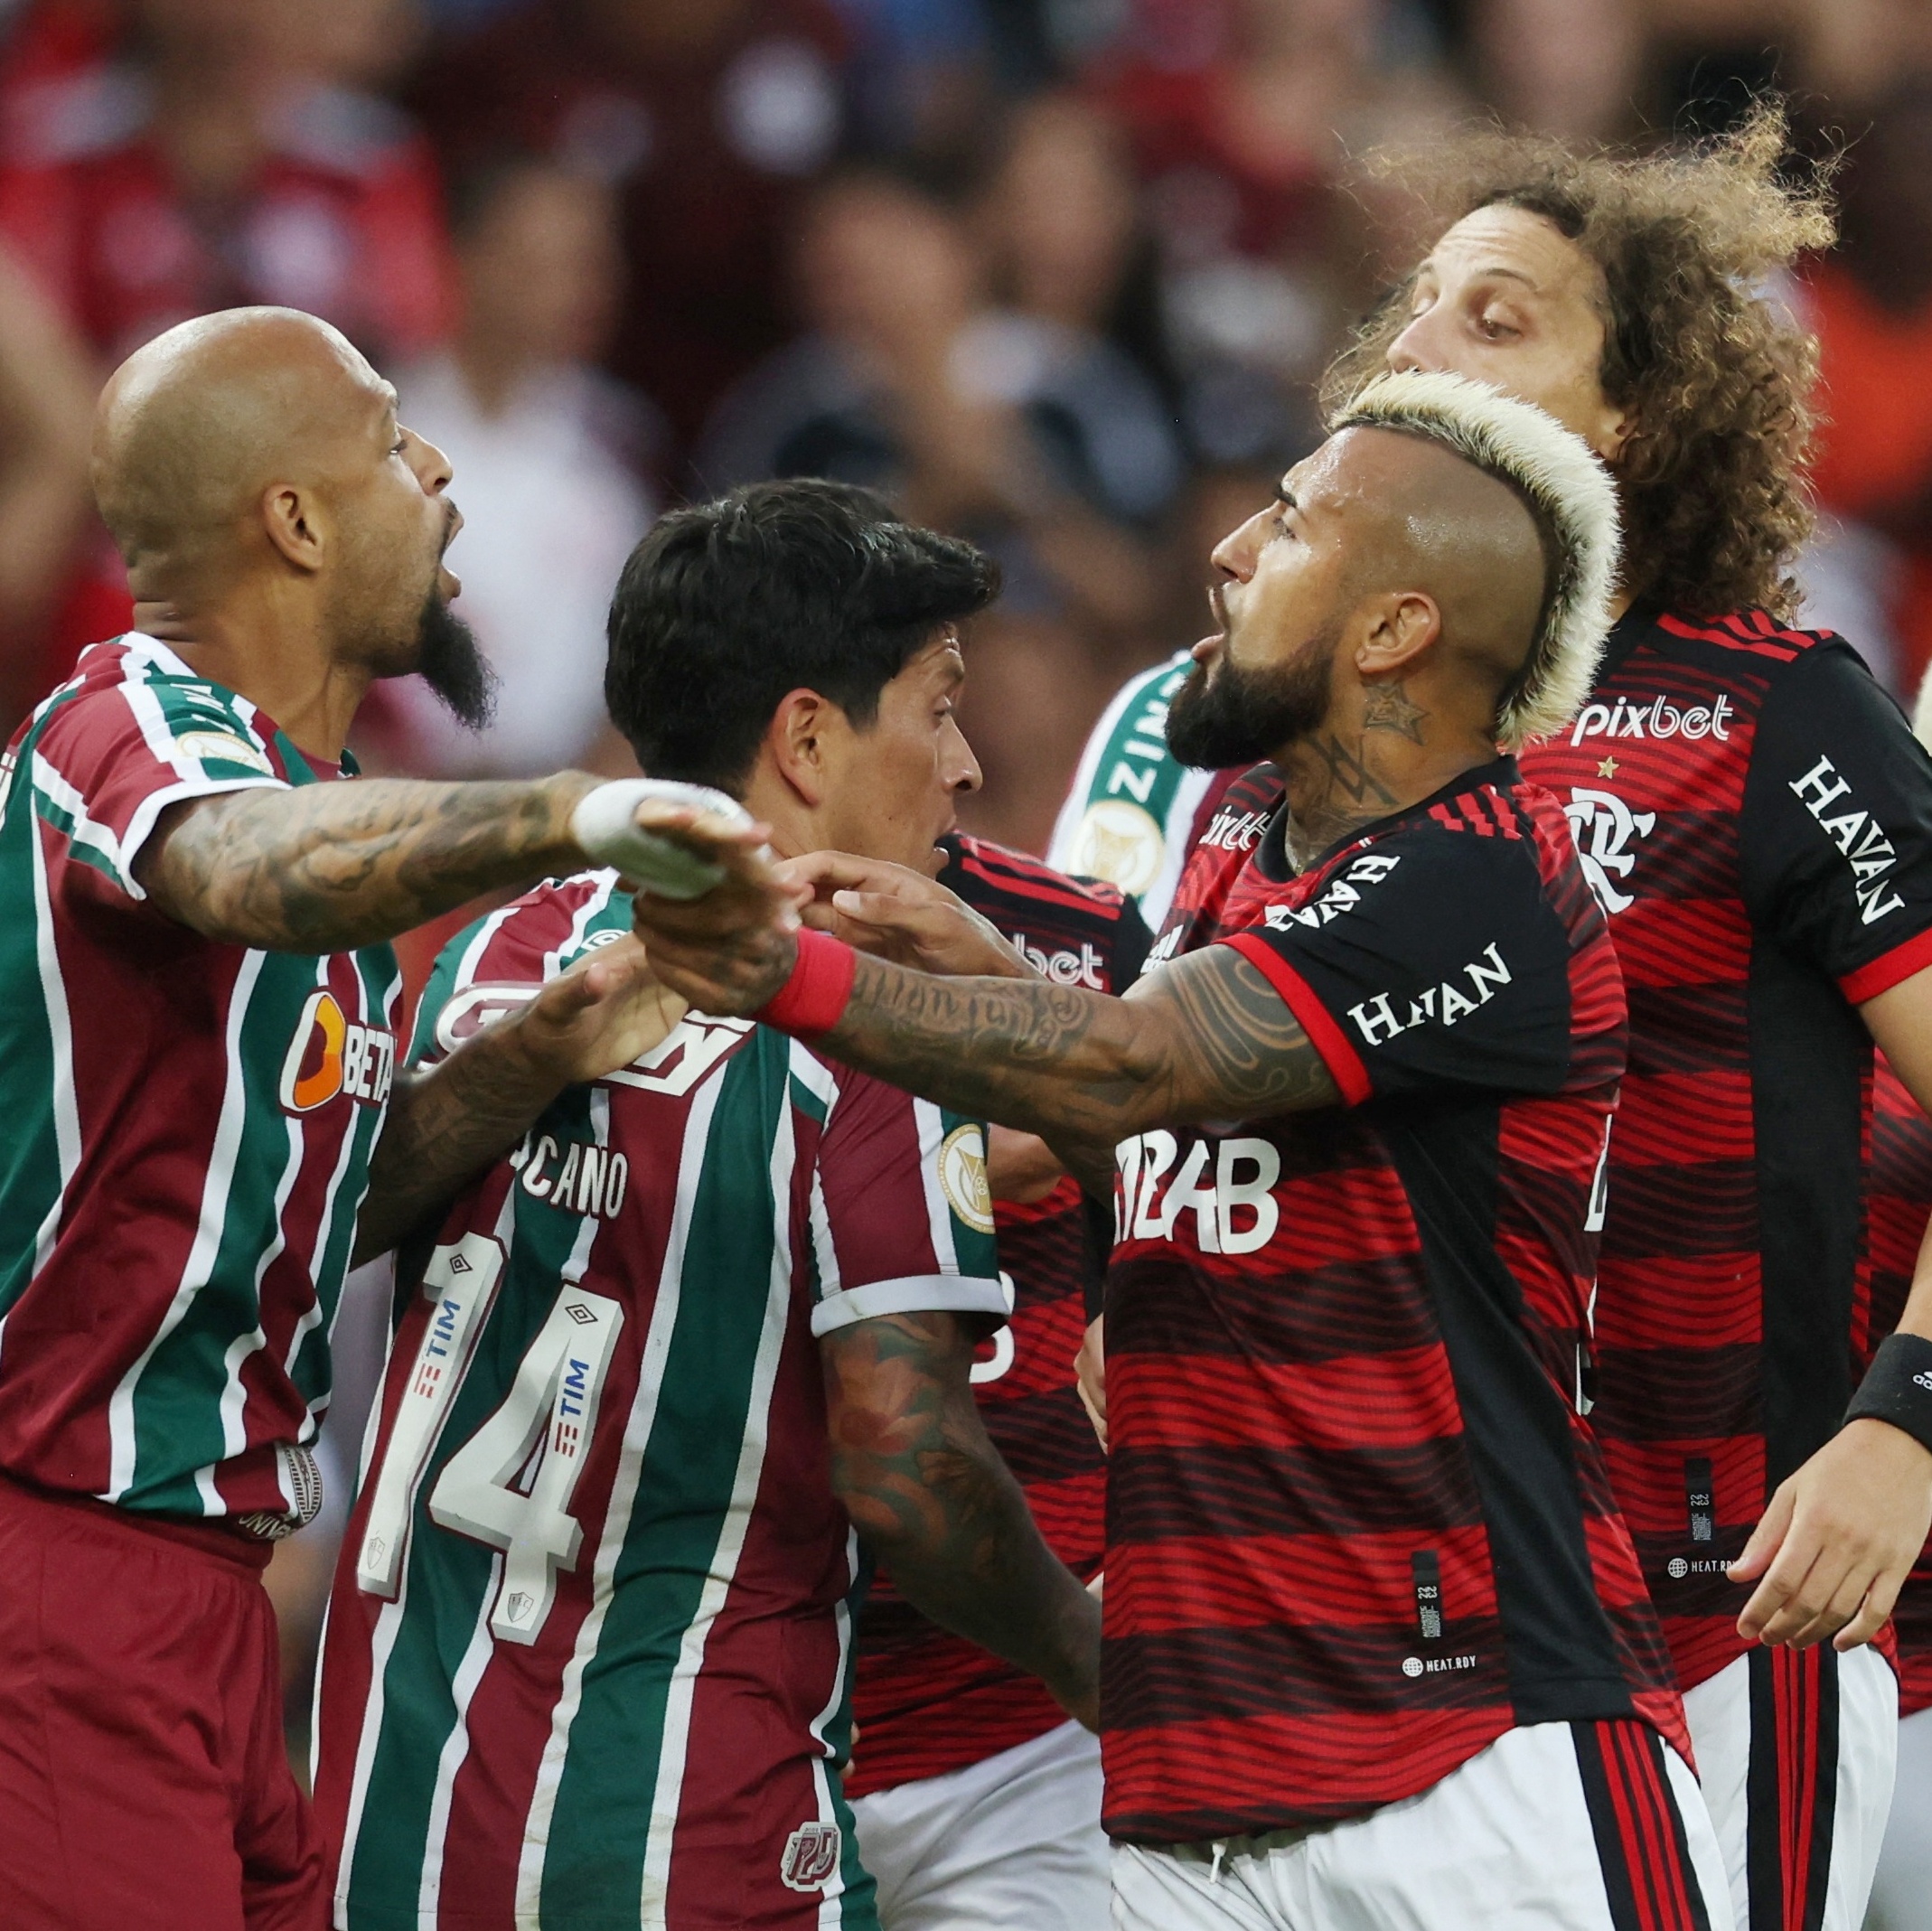 Flamengo Esports on X: Nação, daqui a 10 minutos começa a transmissão, e o  @FLAnalista já mandou o recado. Pra quem não entende inglês, ele disse o  seguinte: enche essa rede social